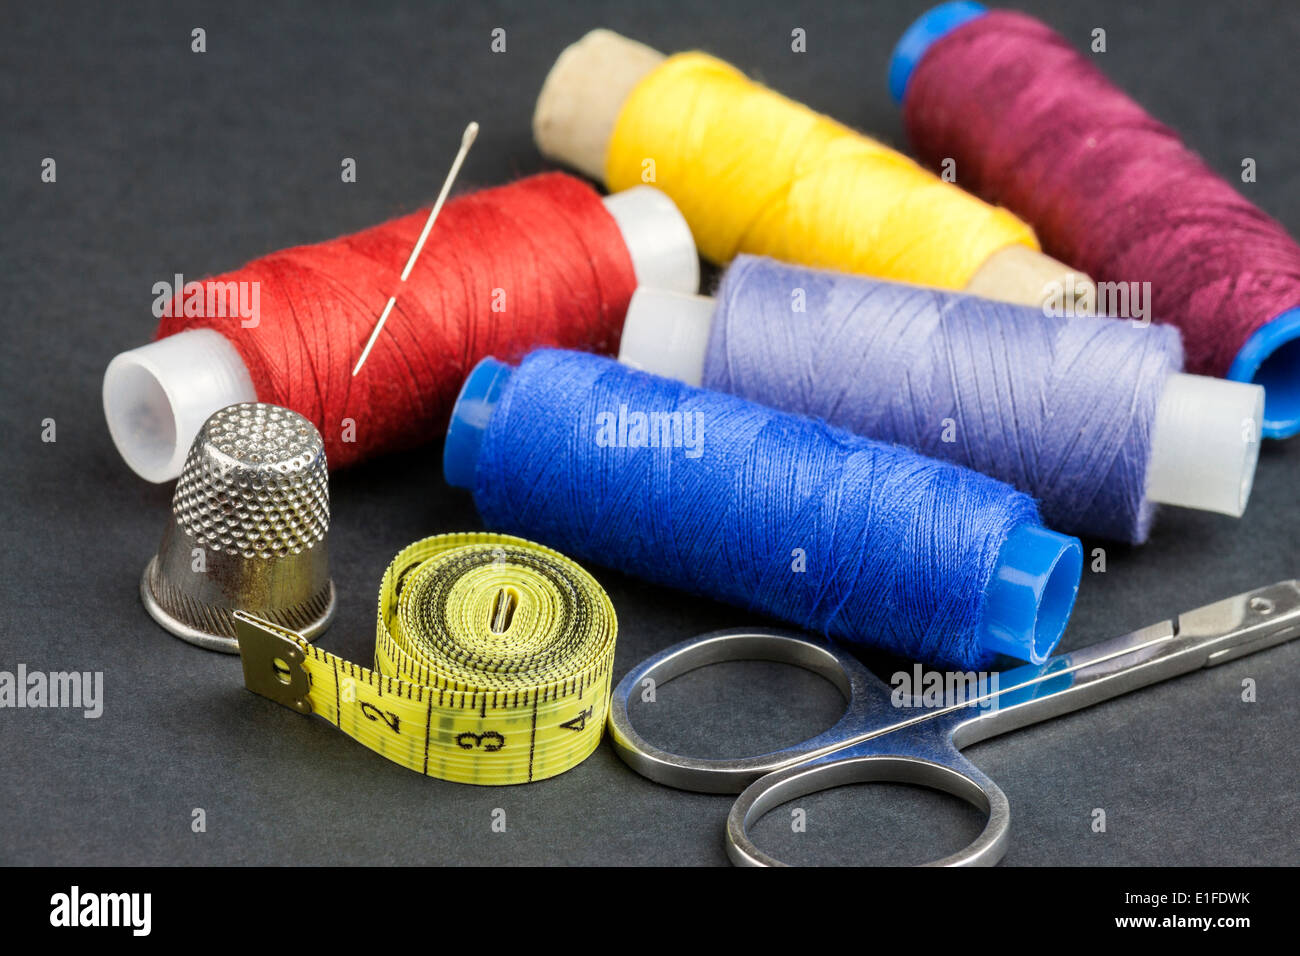 Outils de tailleurs - des ciseaux, des bobines de fil, de mesurer, d'aiguille et dé - isolé sur fond noir Banque D'Images